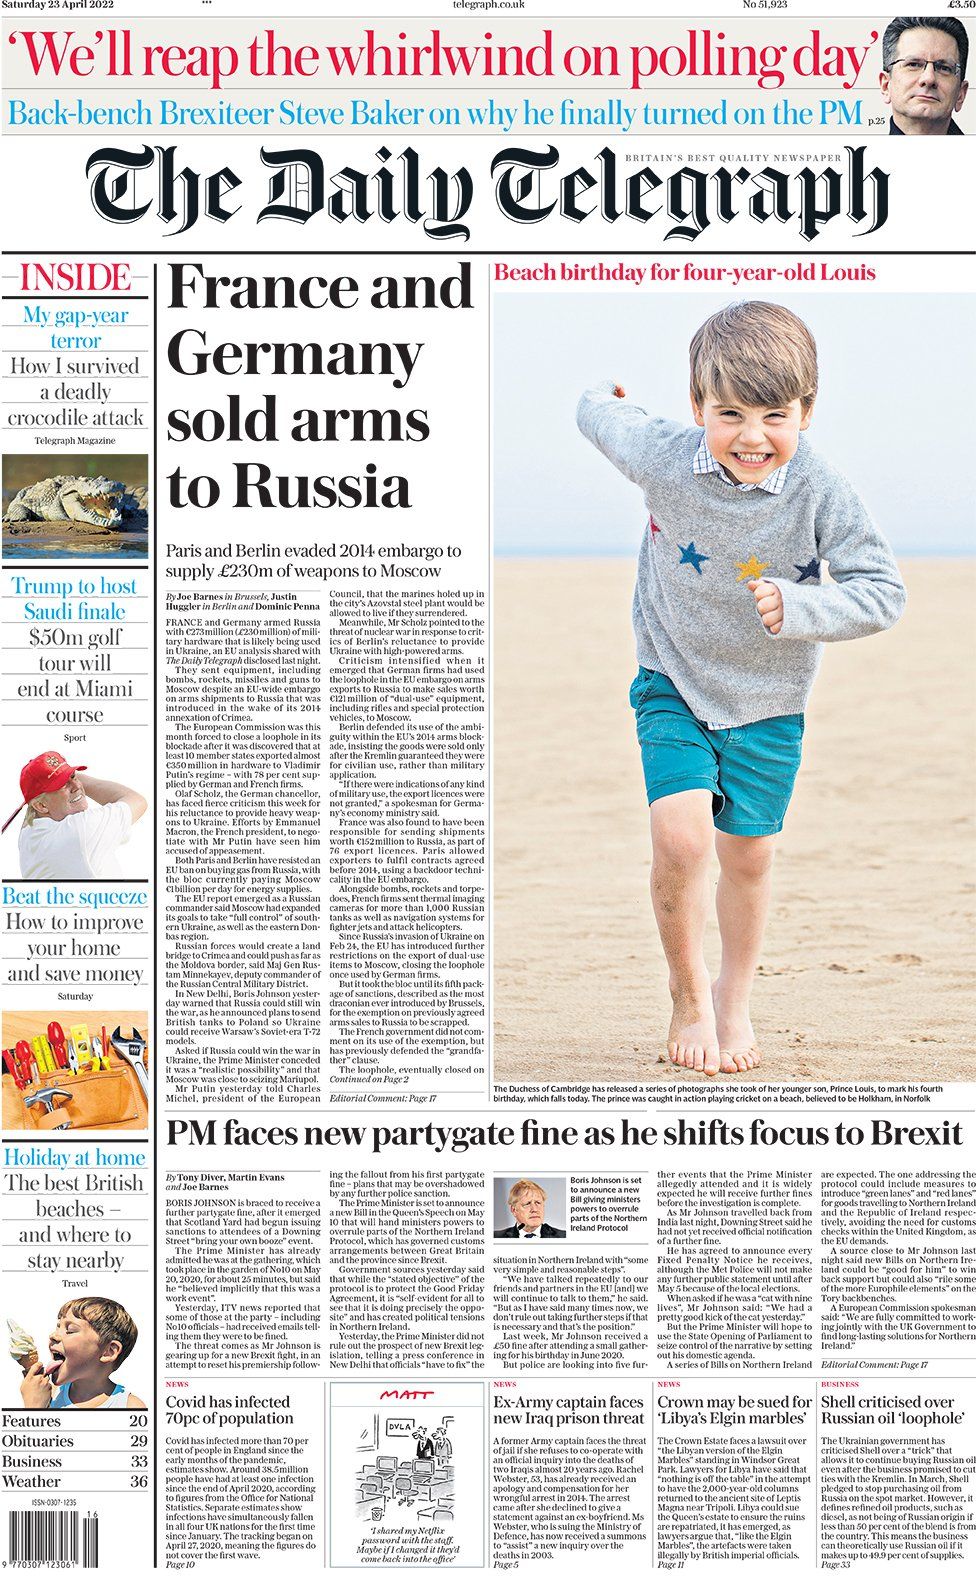 Первая страница The Daily Telegraph 23 апреля 2022 г.